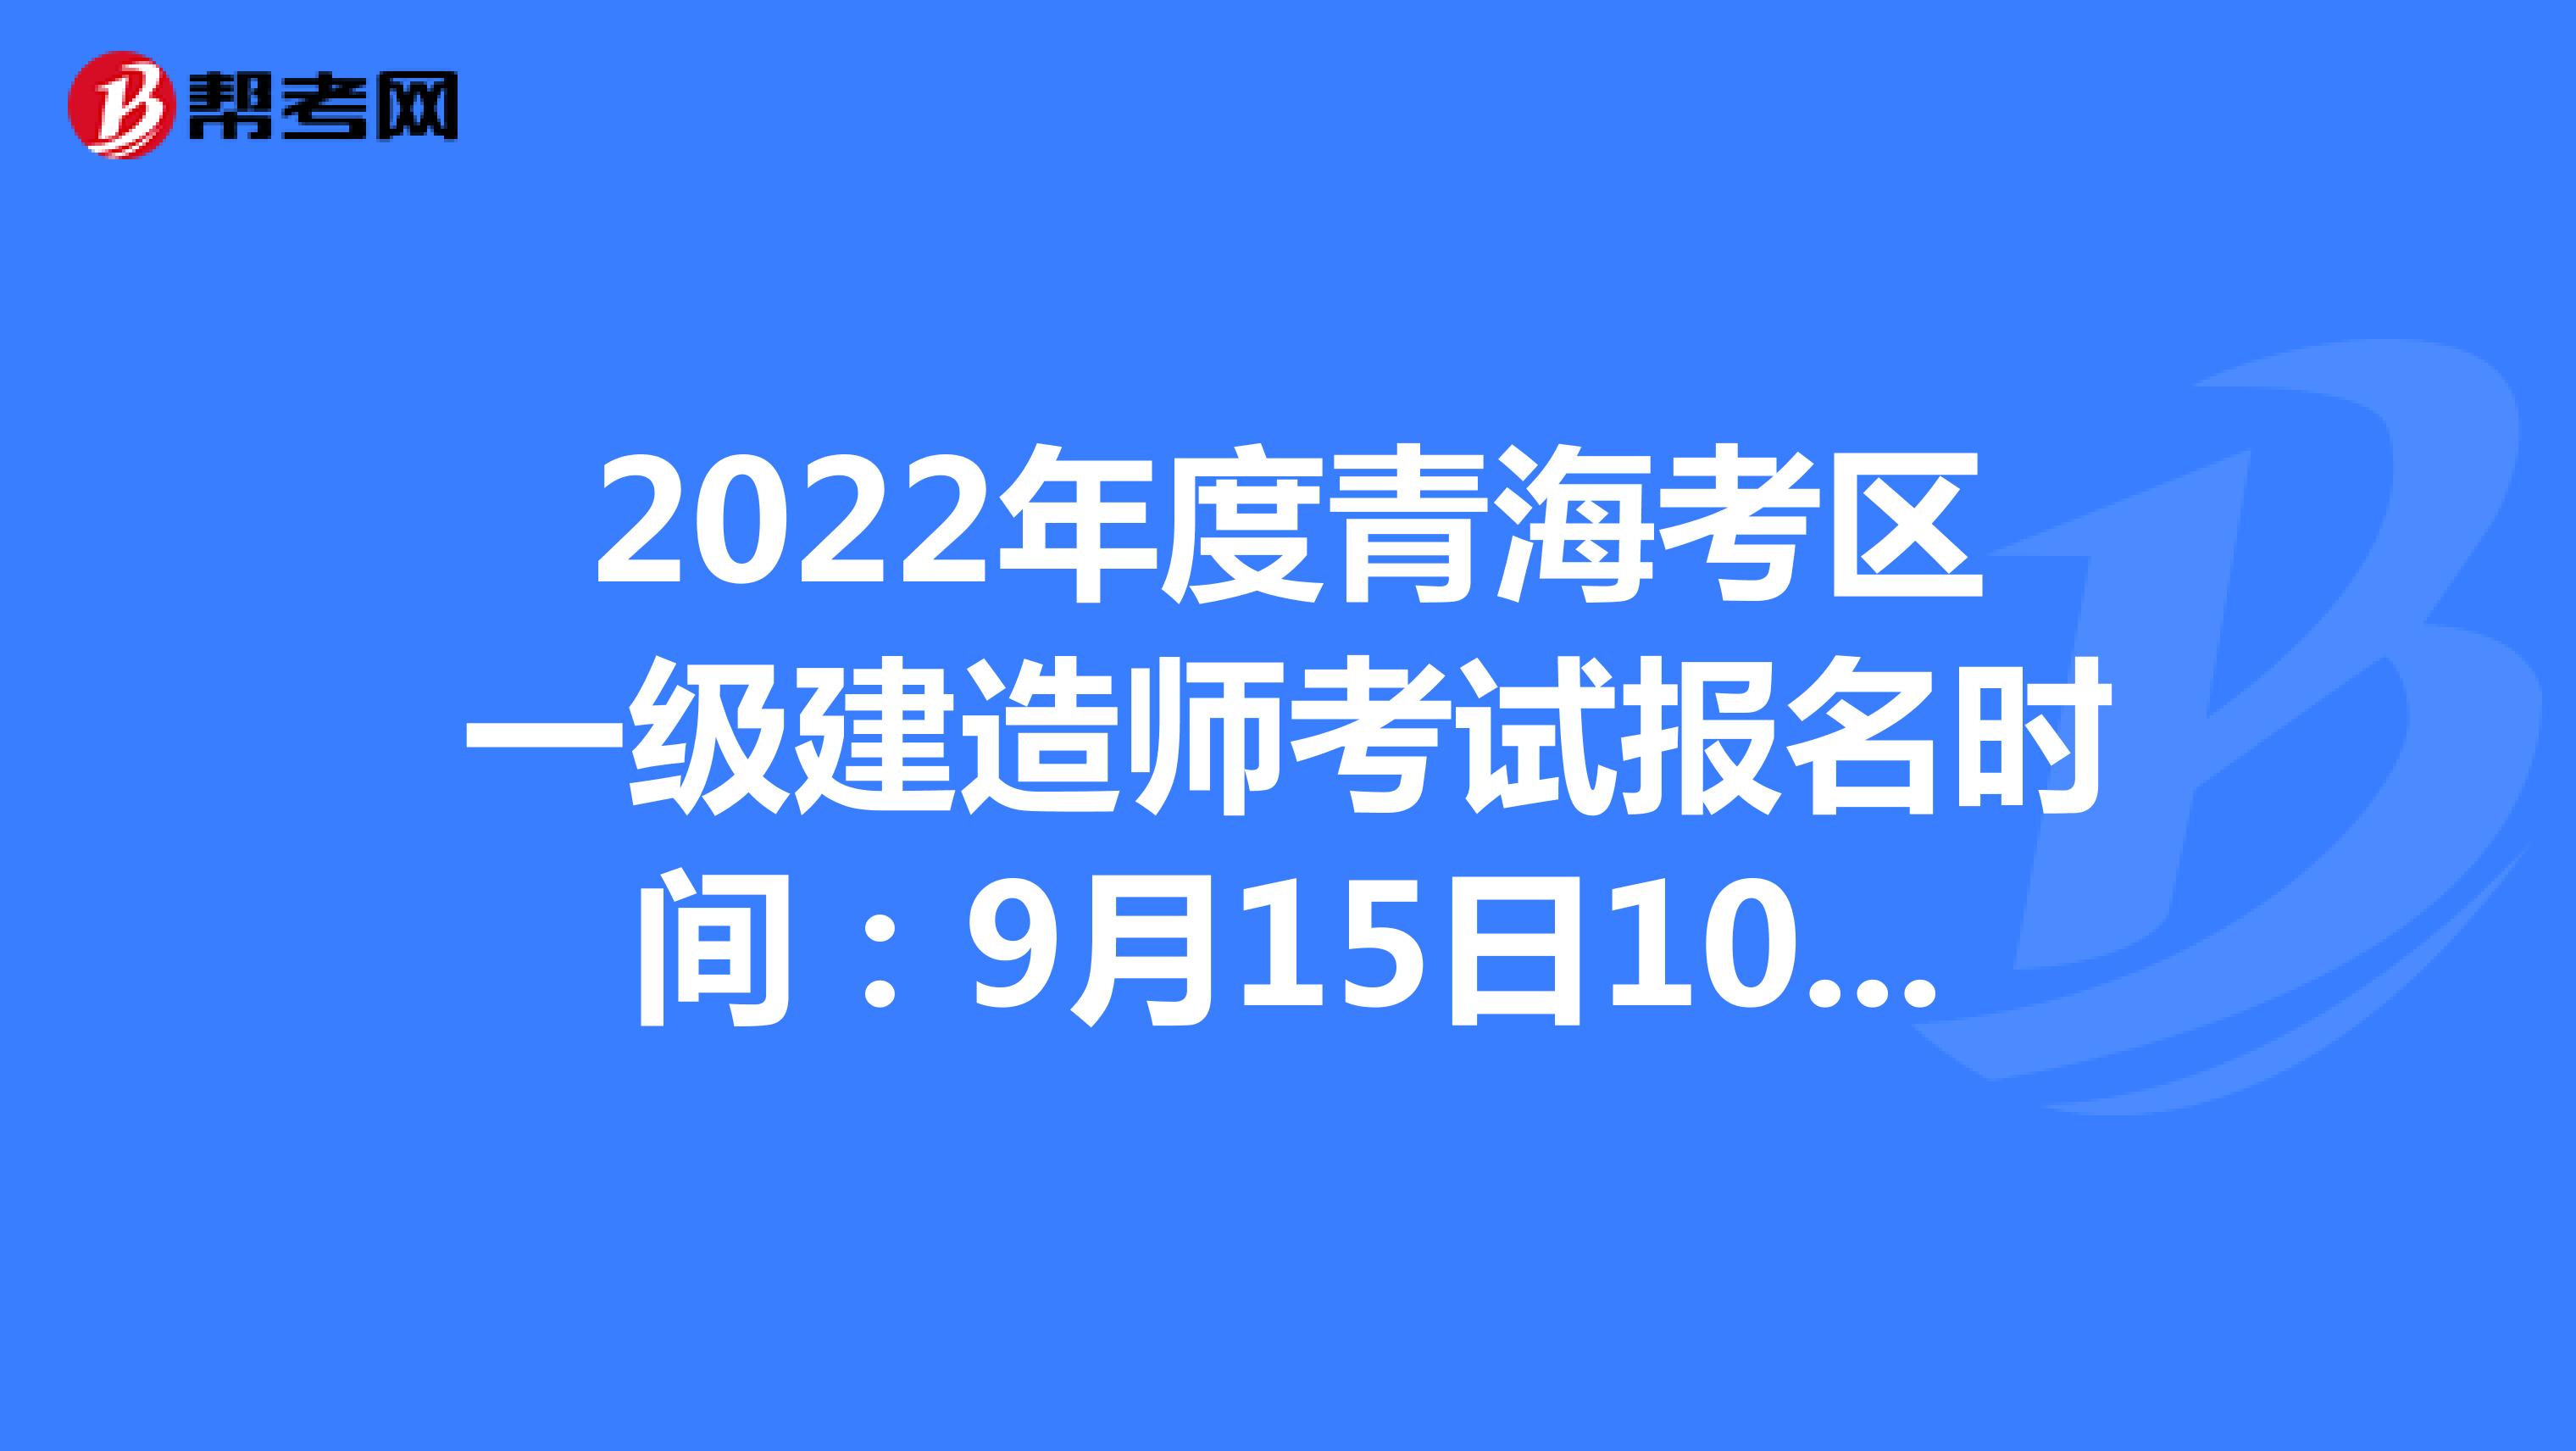 2022年度上海考区一级建造师考试报名时间：9月15日10:00-9月21日16:00